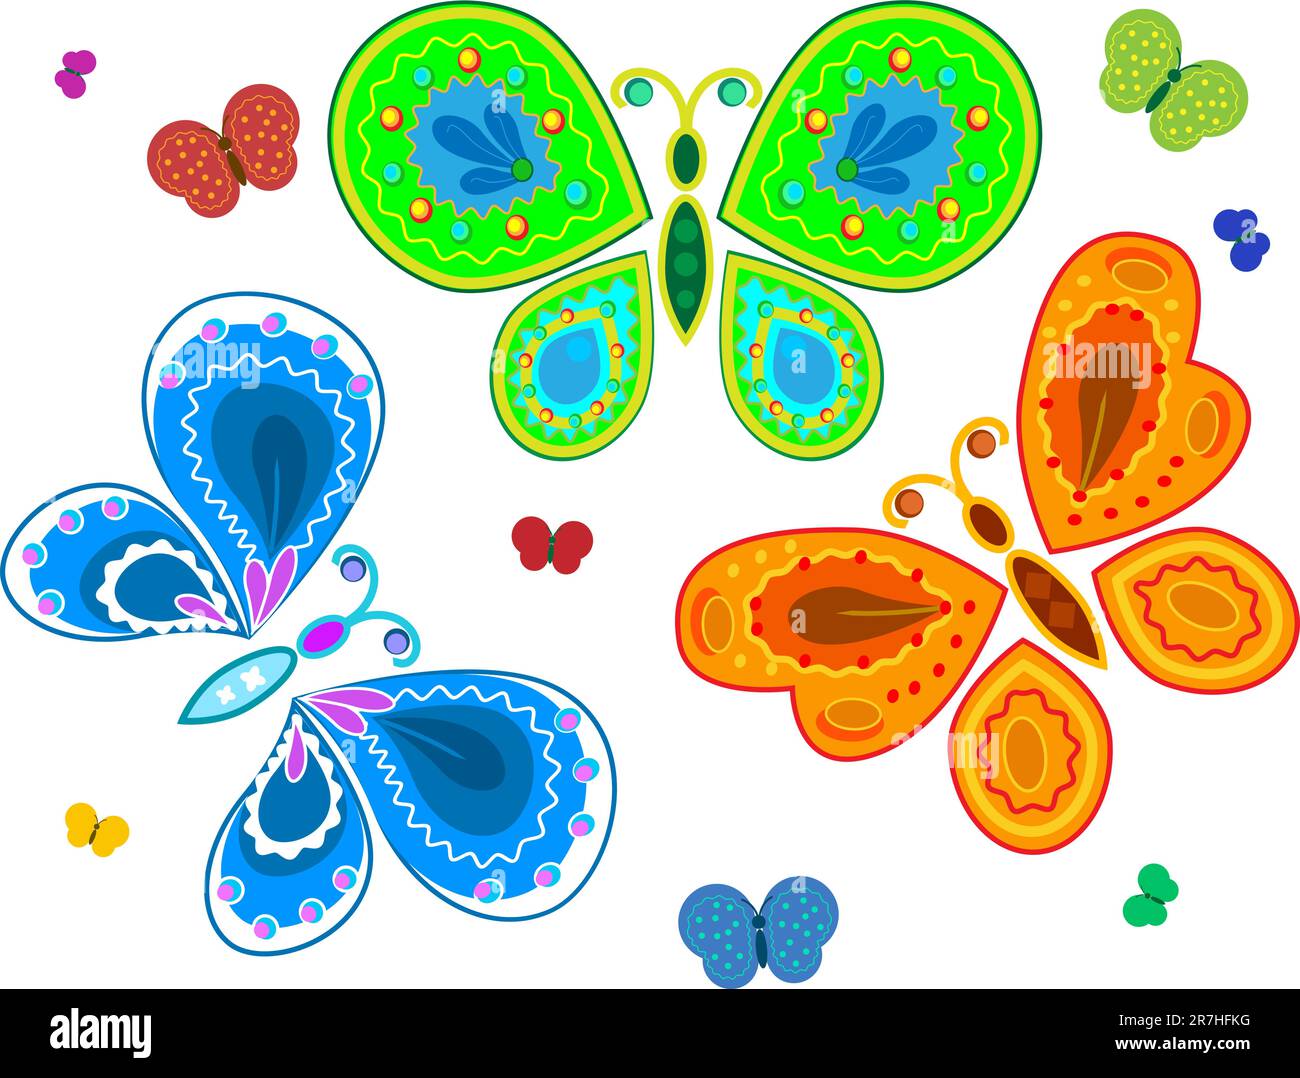 Questa collezione decorativa di farfalle può essere perfettamente utilizzata in un album di foto, nel disegno di carte. Illustrazione Vettoriale